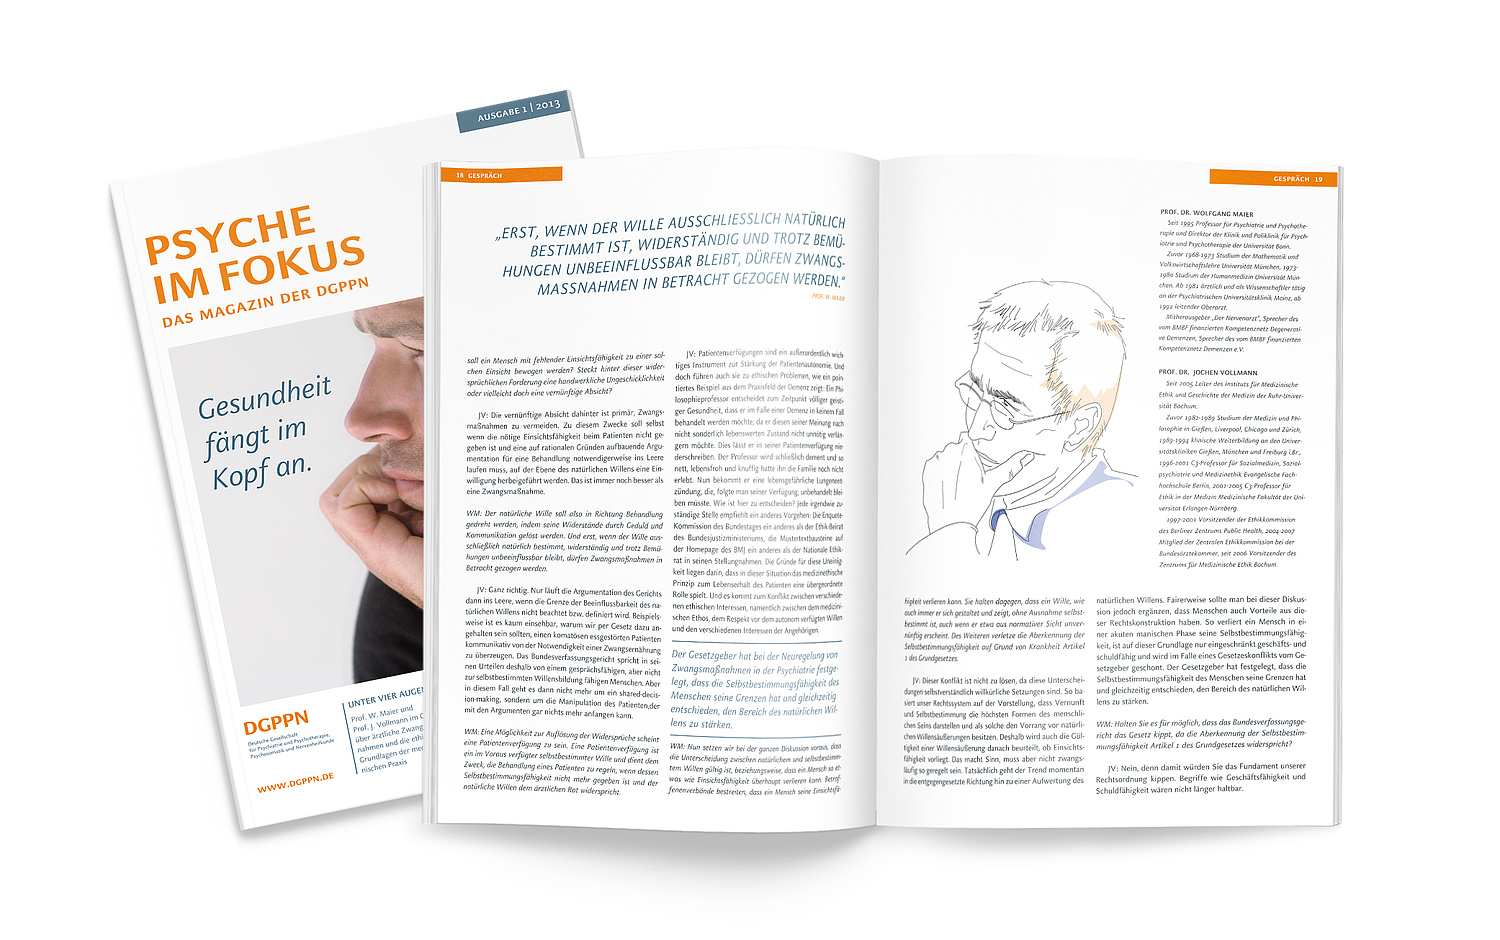 Das Bild zeigt das Titelcover und eine Doppelseite für das Magazin der DGPPN, "Psyche im Focus" (für die Deutsche Gesellschaft für Psychiatrie und Psychotherapie, Psychosomatik und Nervenheilkunde (DGPPN), 2013) (© Papenfuss | Atelier)